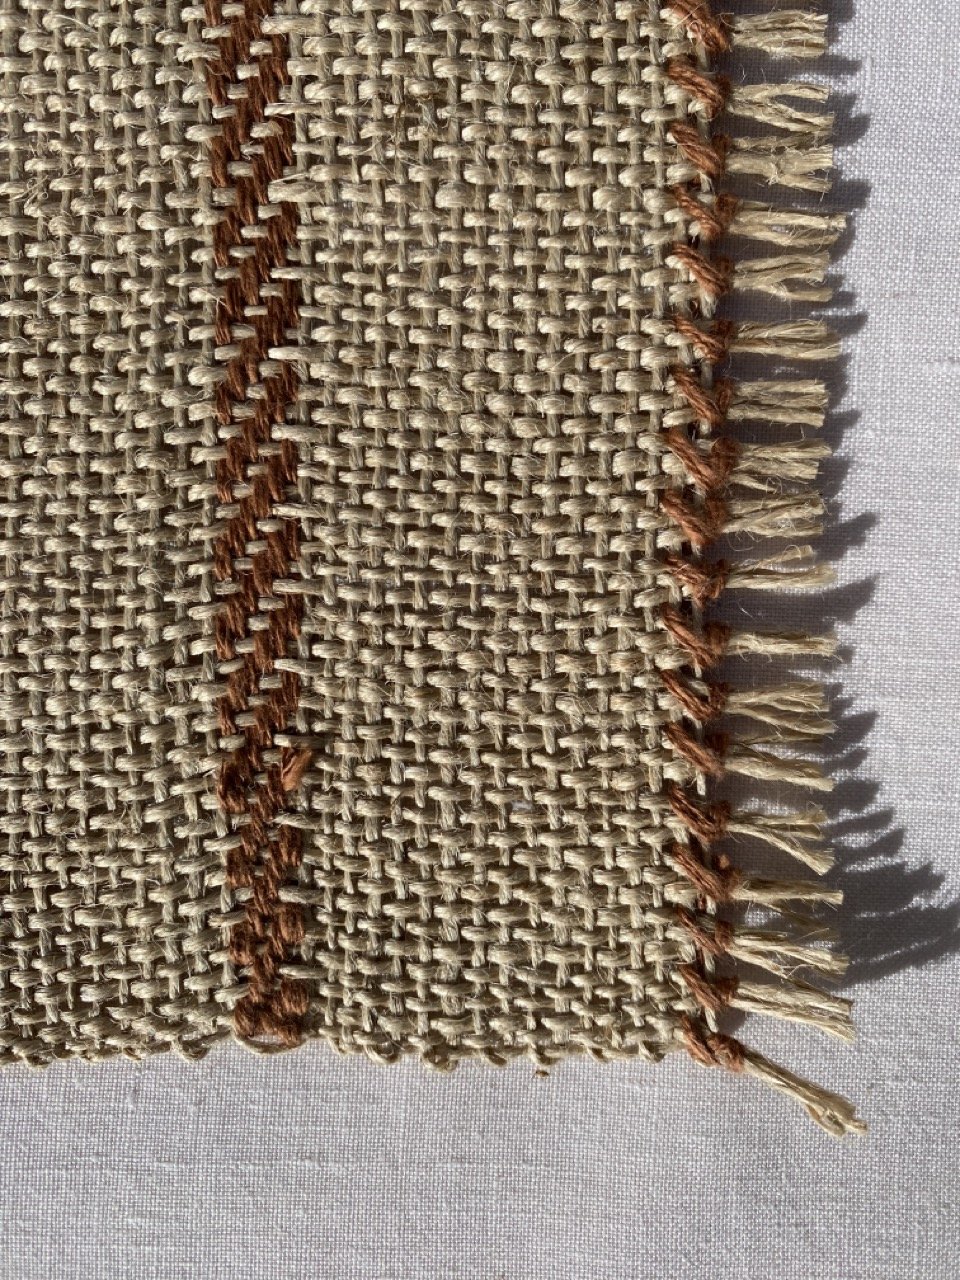 Handwoven Jute & Linen Placemat - Brown Detail